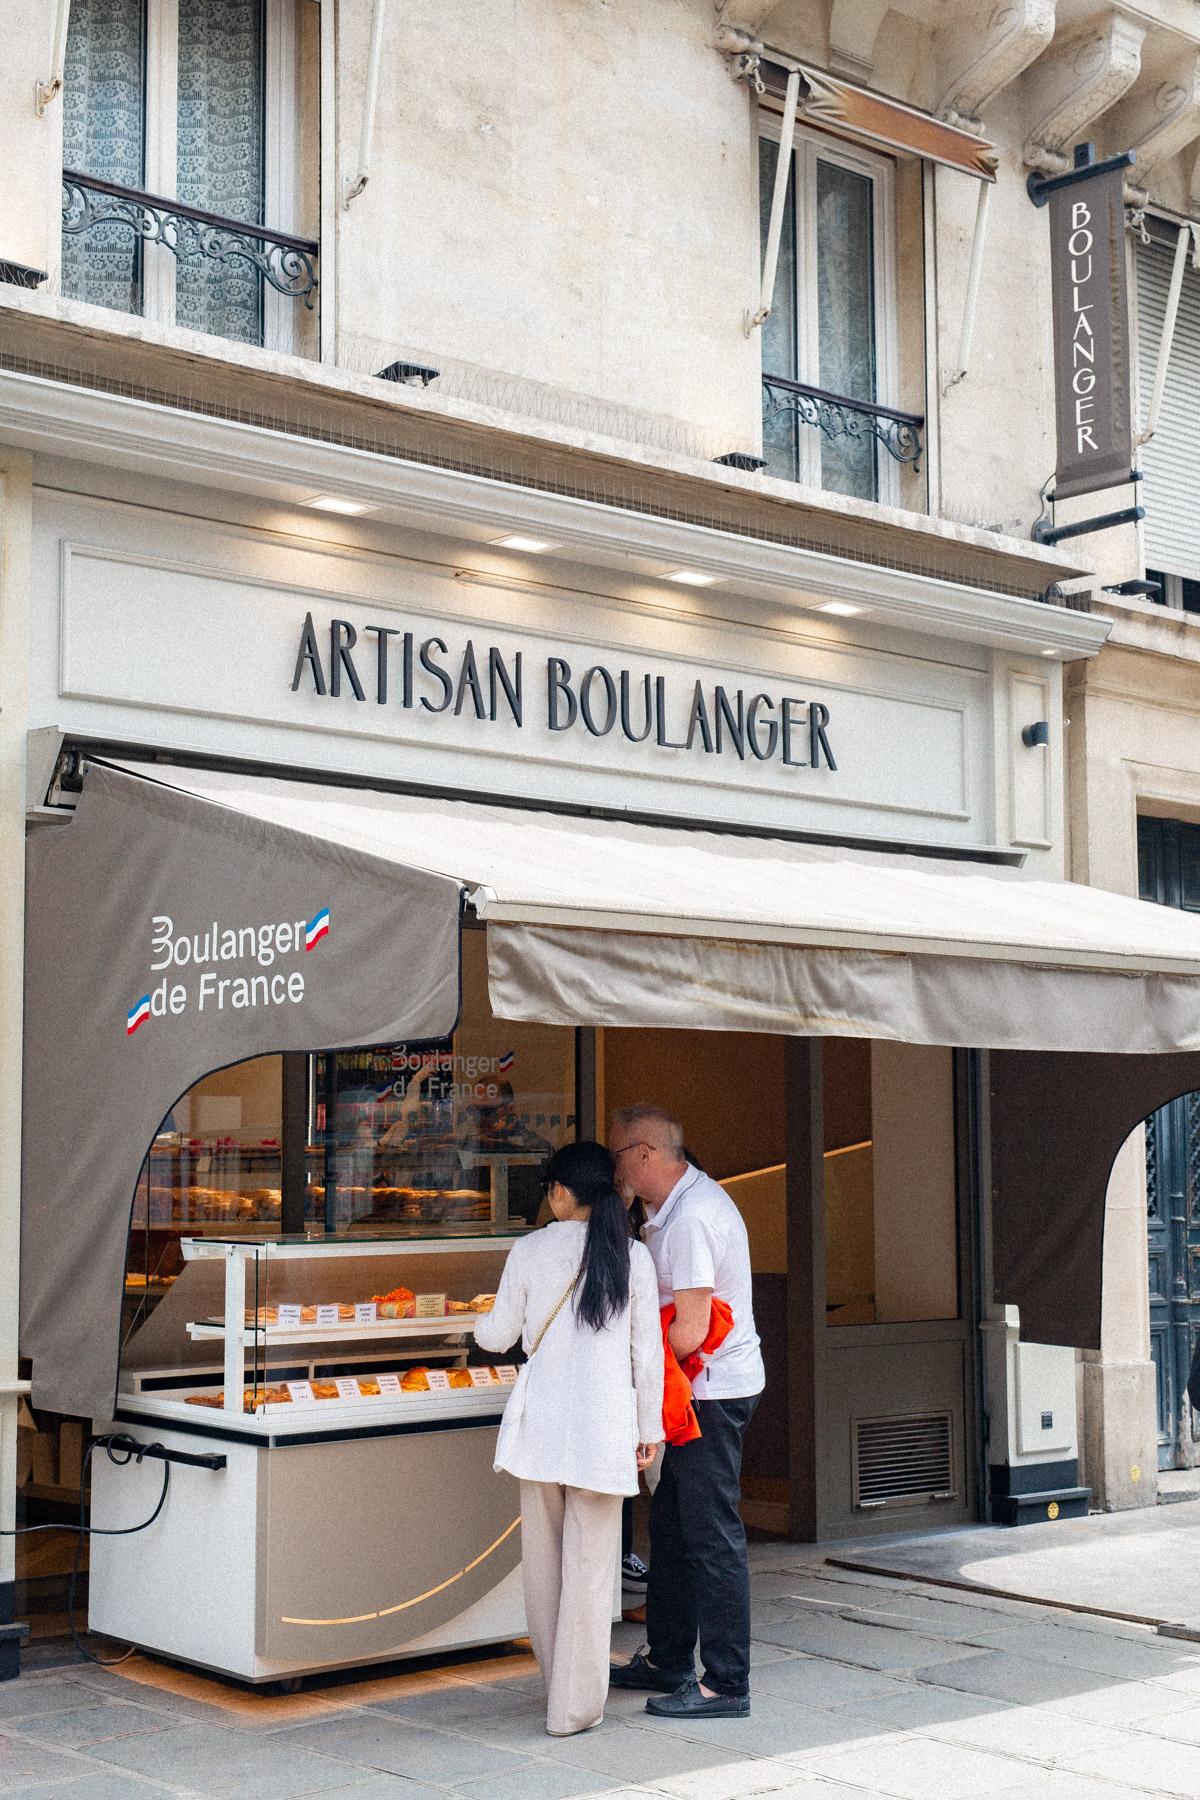 Boulangerie-Pâtisserie Laurent Dheilly
best cheap eats Paris 